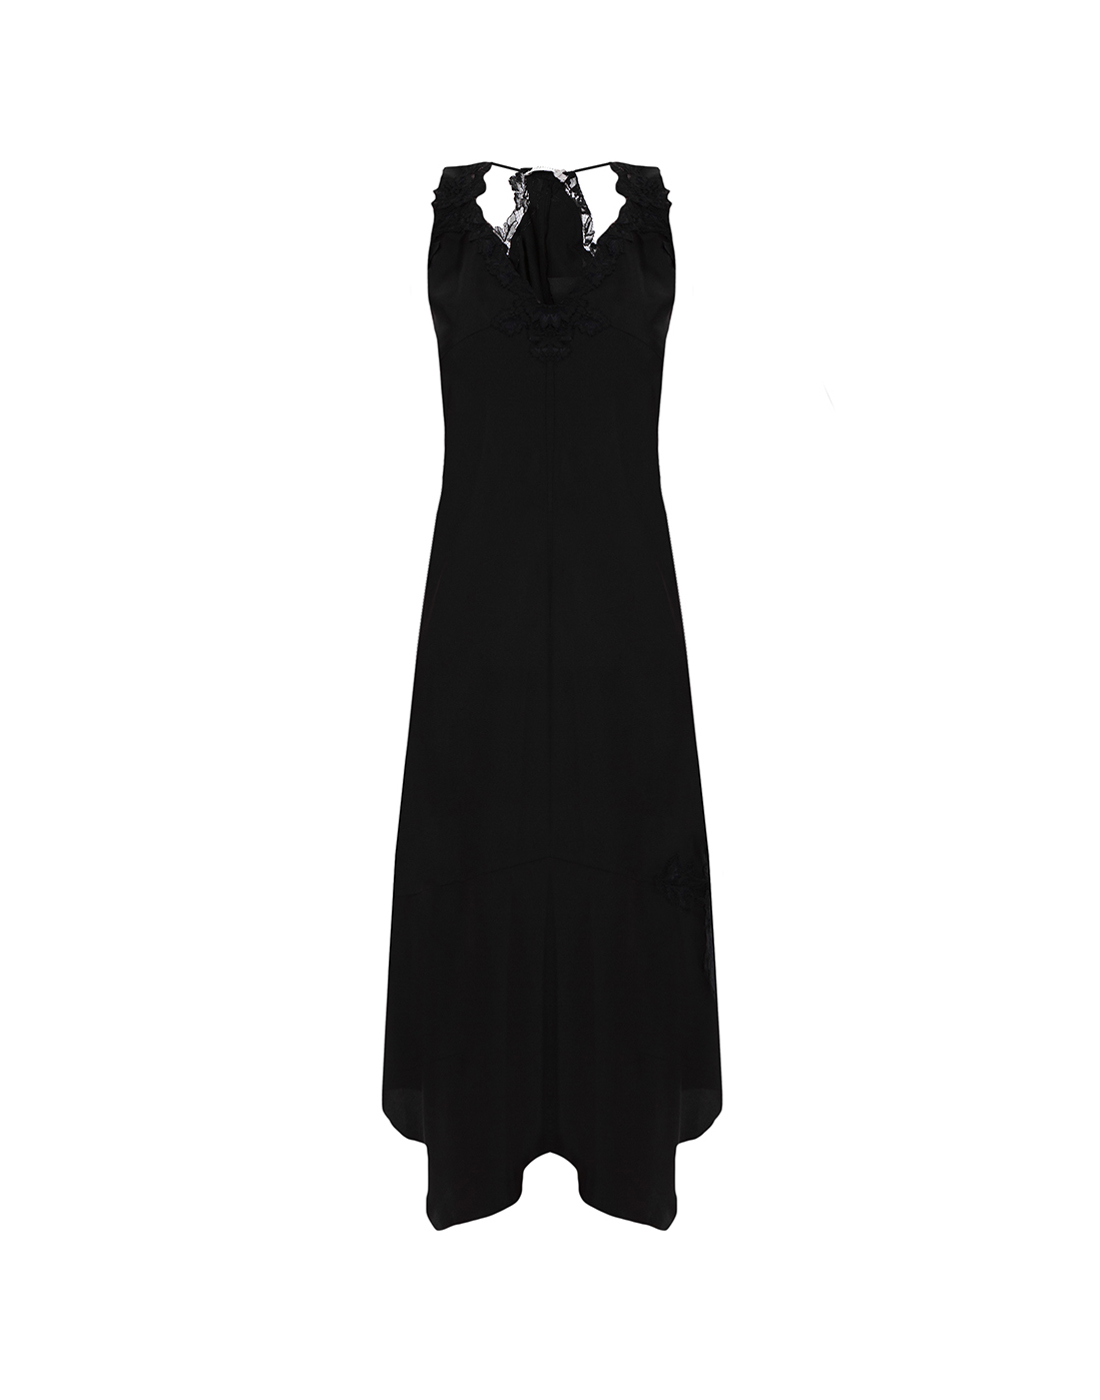 Платье черное женское Dorothee Schumacher S549404/999-1